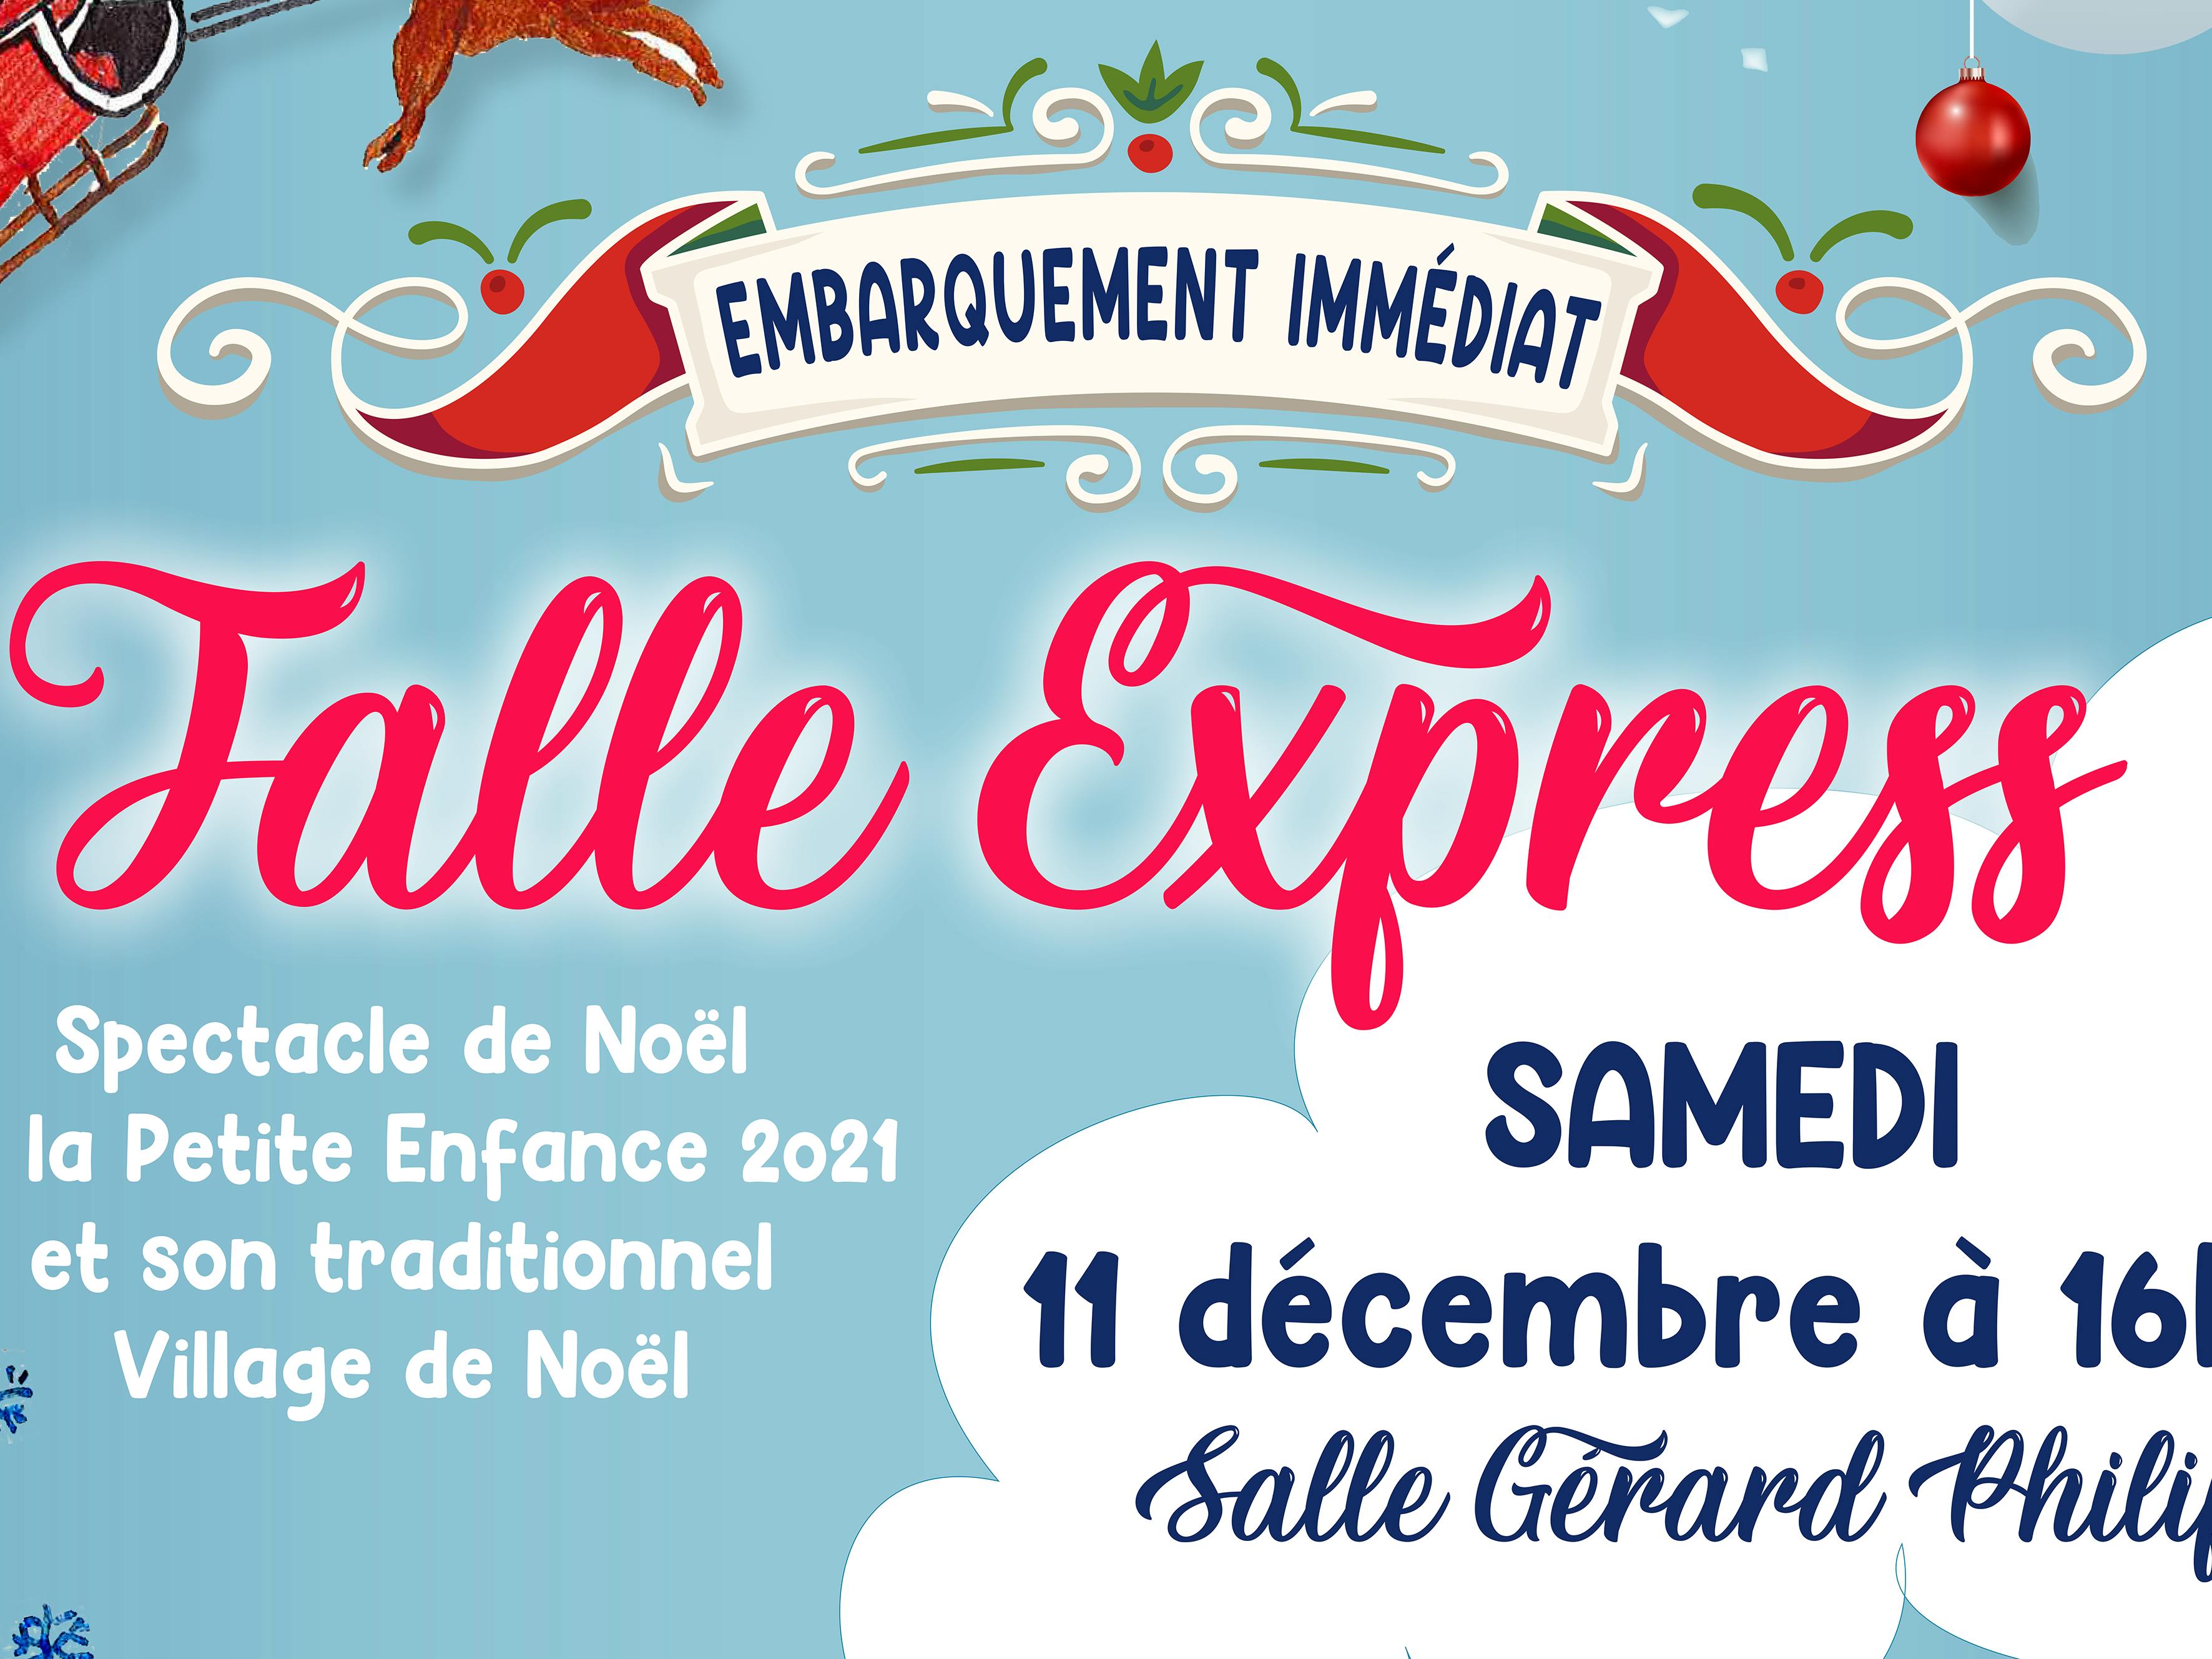 Noël de la Petite Enfance 2021 : embarquement immédiat pour le Jalle Express !